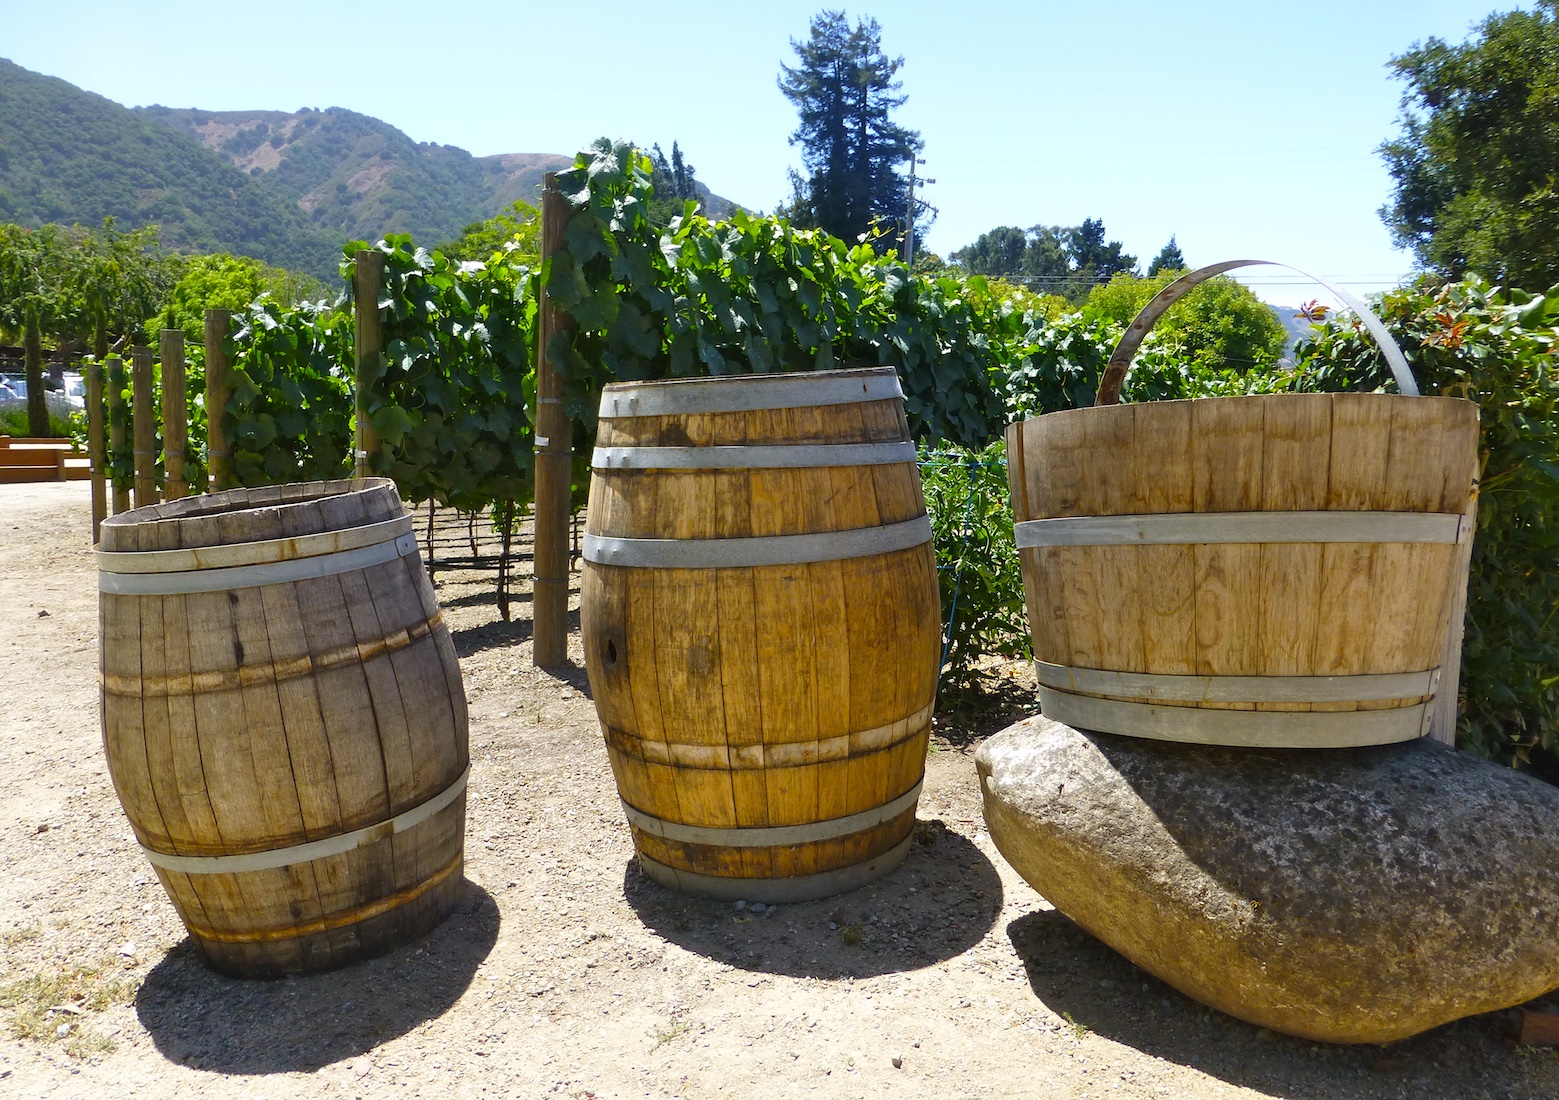 Wine tasting in Carmel Valley, California